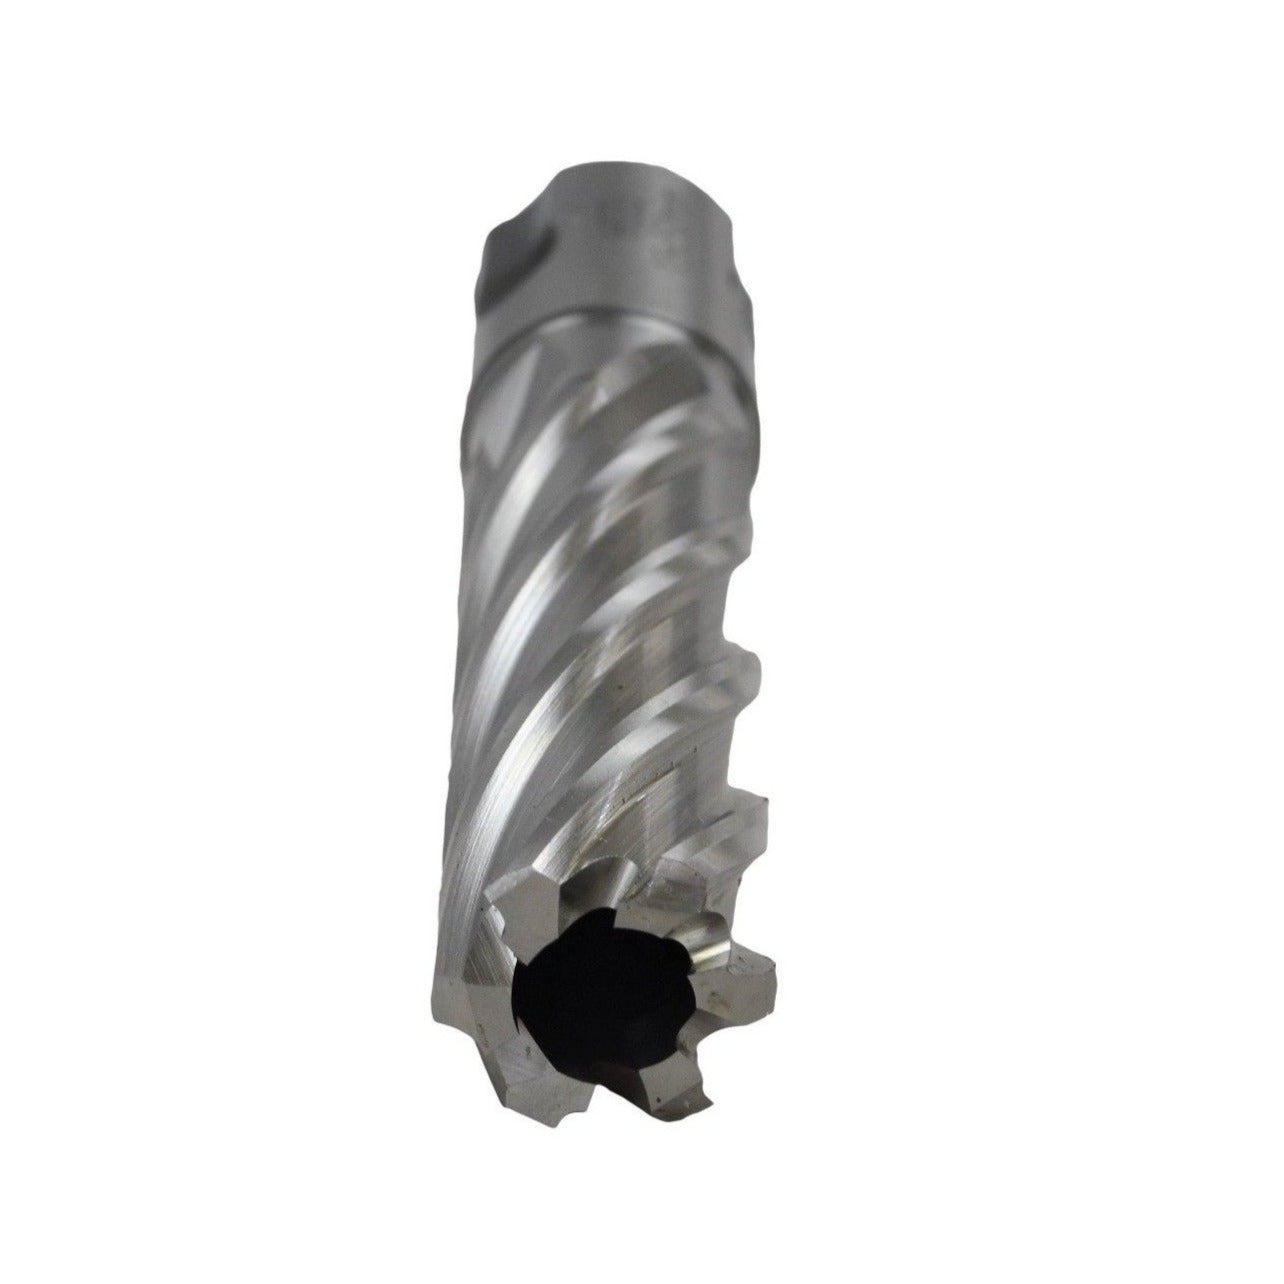 18x50mm HSS Annular Broach Cutter ; Magnetic Drill ; Rotabroach ; Universal Shank